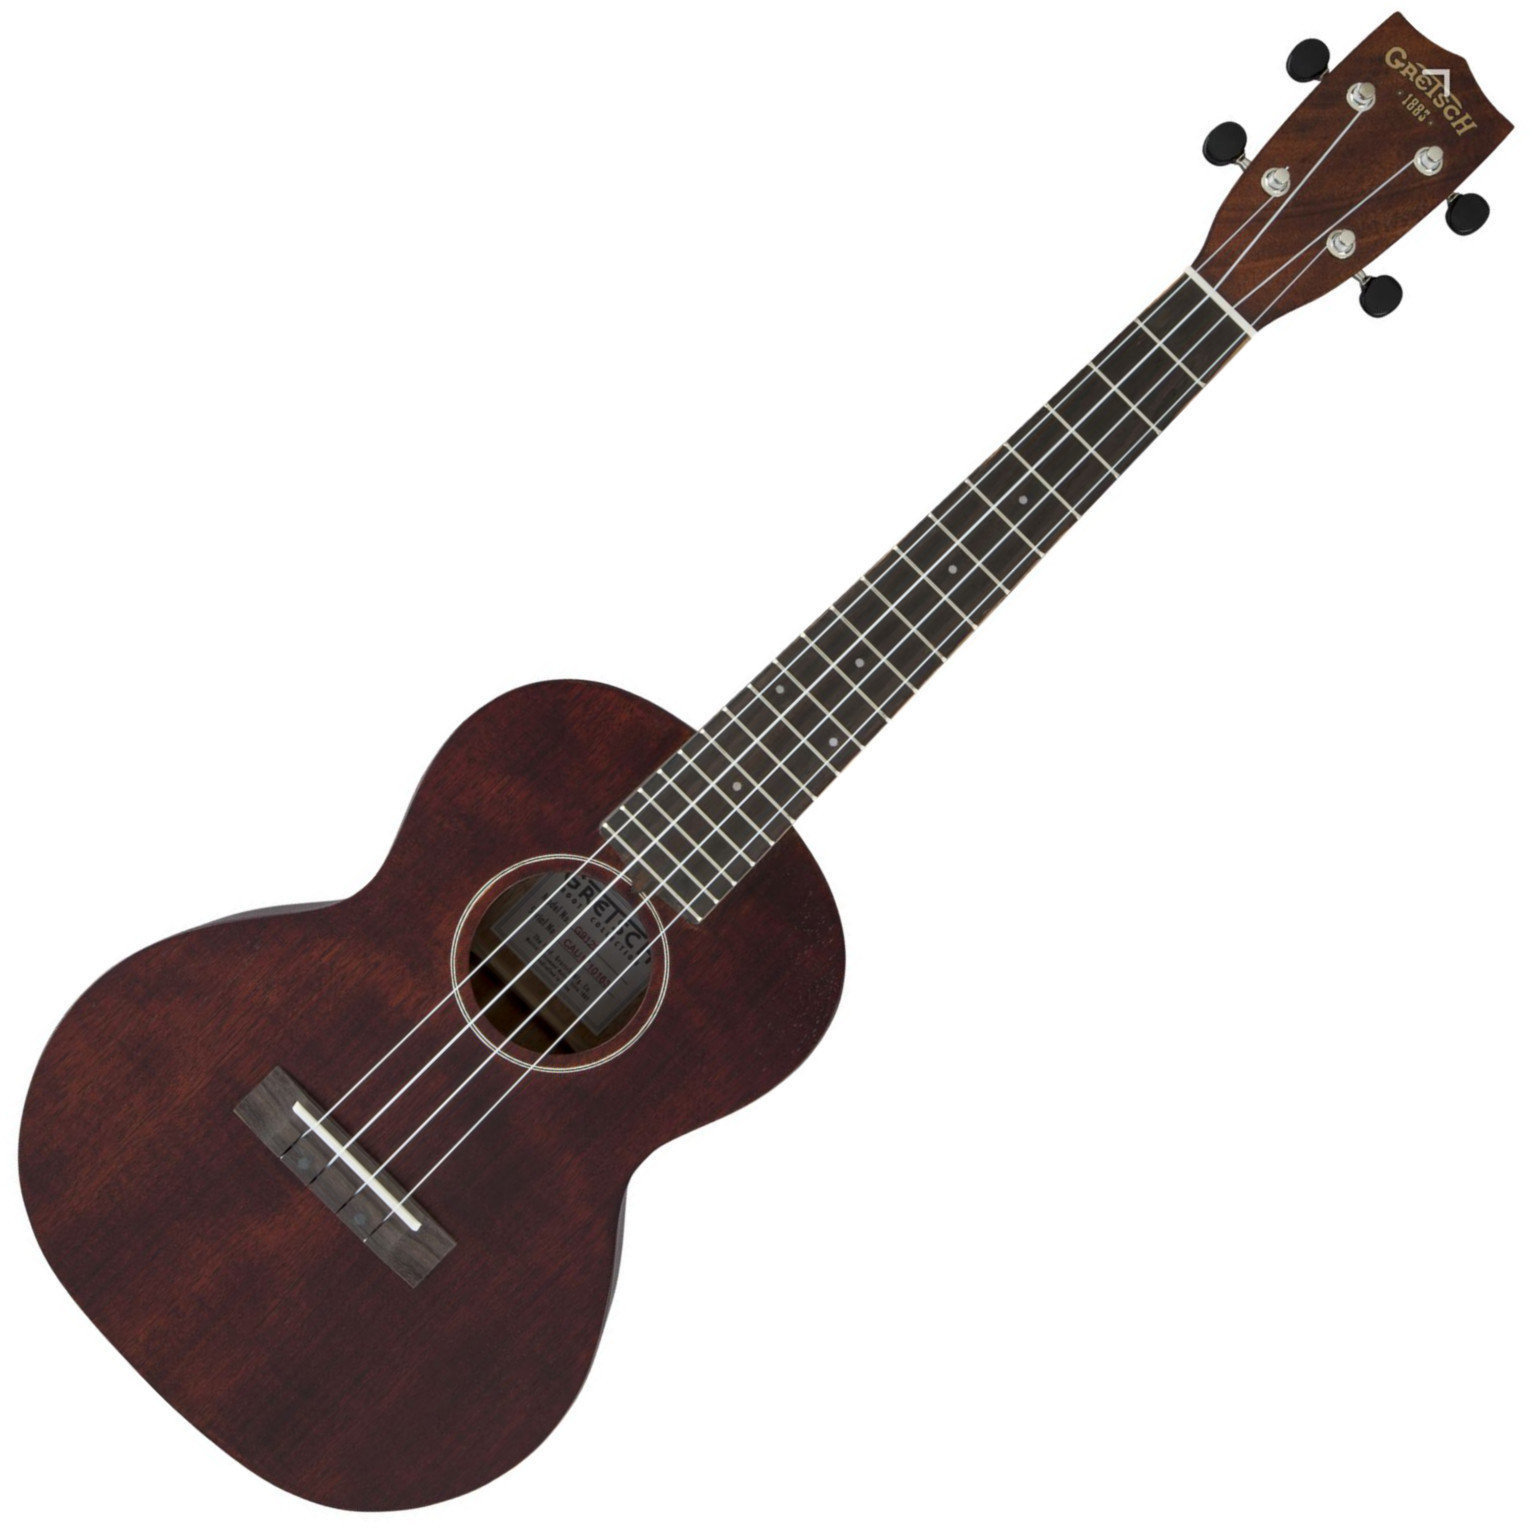 Tenor ukulele Gretsch G9120 Tenor ukulele Vintage Mahogany Stain